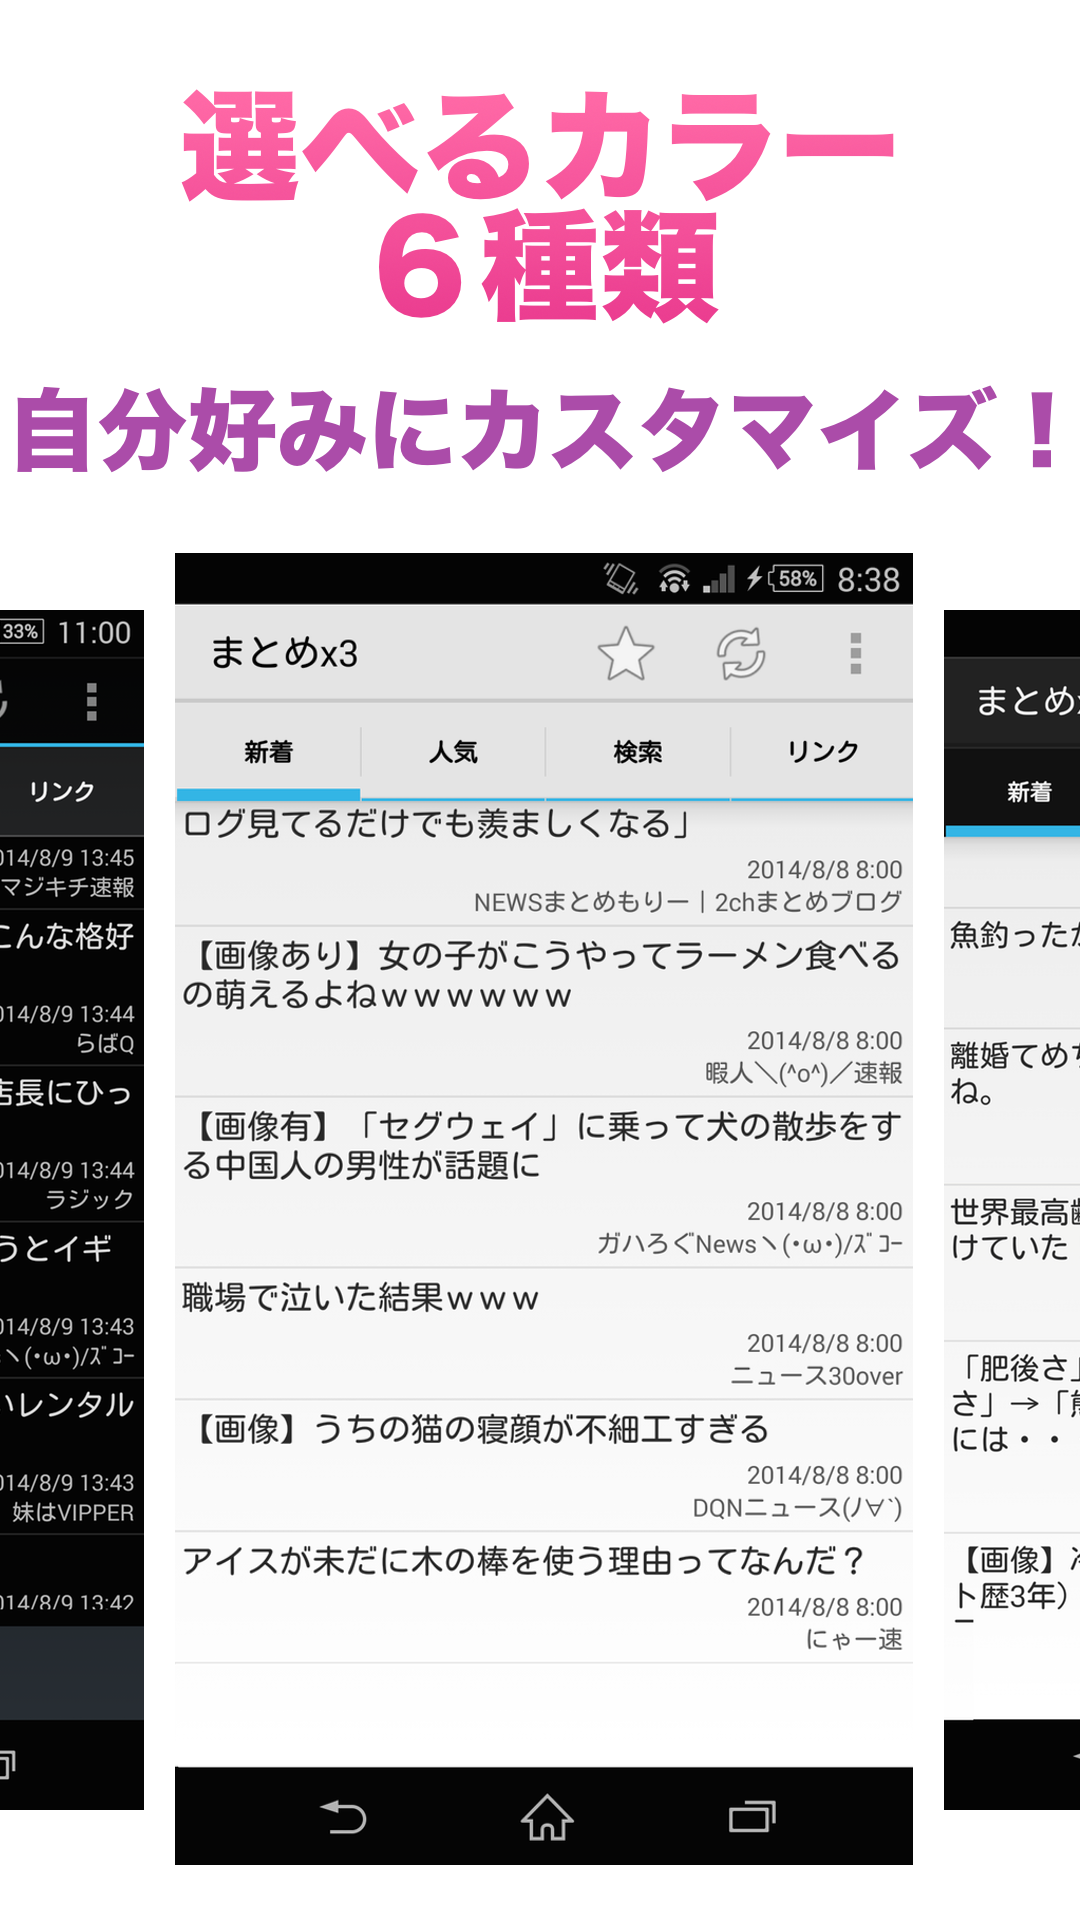 Android application まとめx3 - まとめブログリーダー screenshort